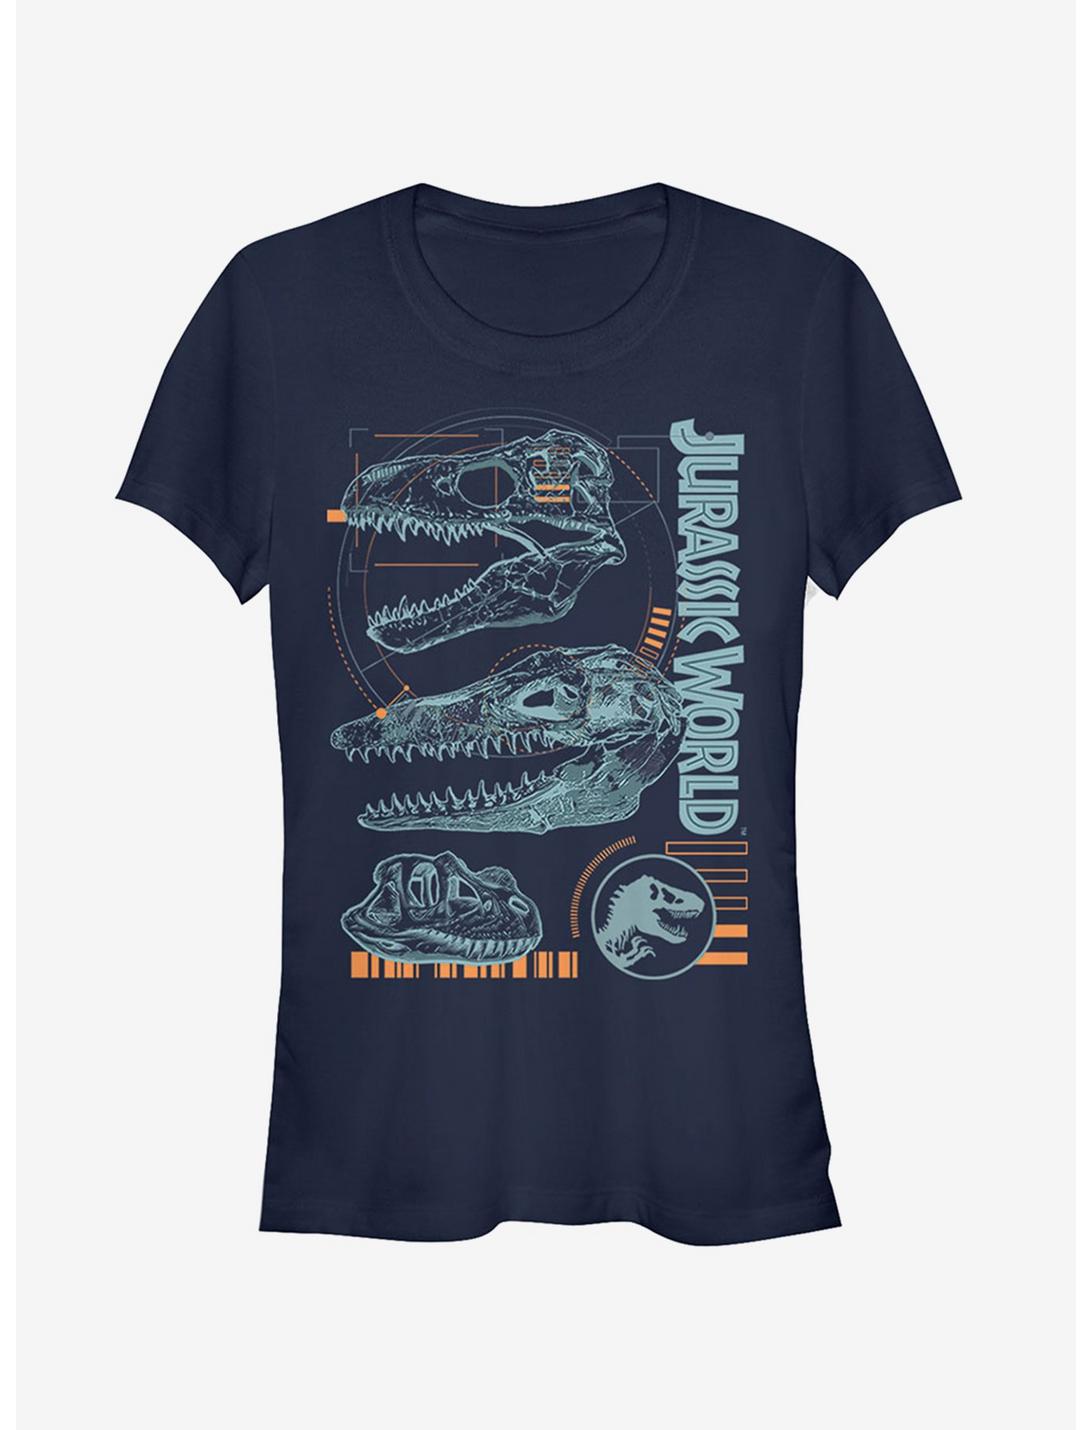 Jurassic World Fallen Kingdom Fossil Skulls Girls T-Shirt, NAVY, hi-res